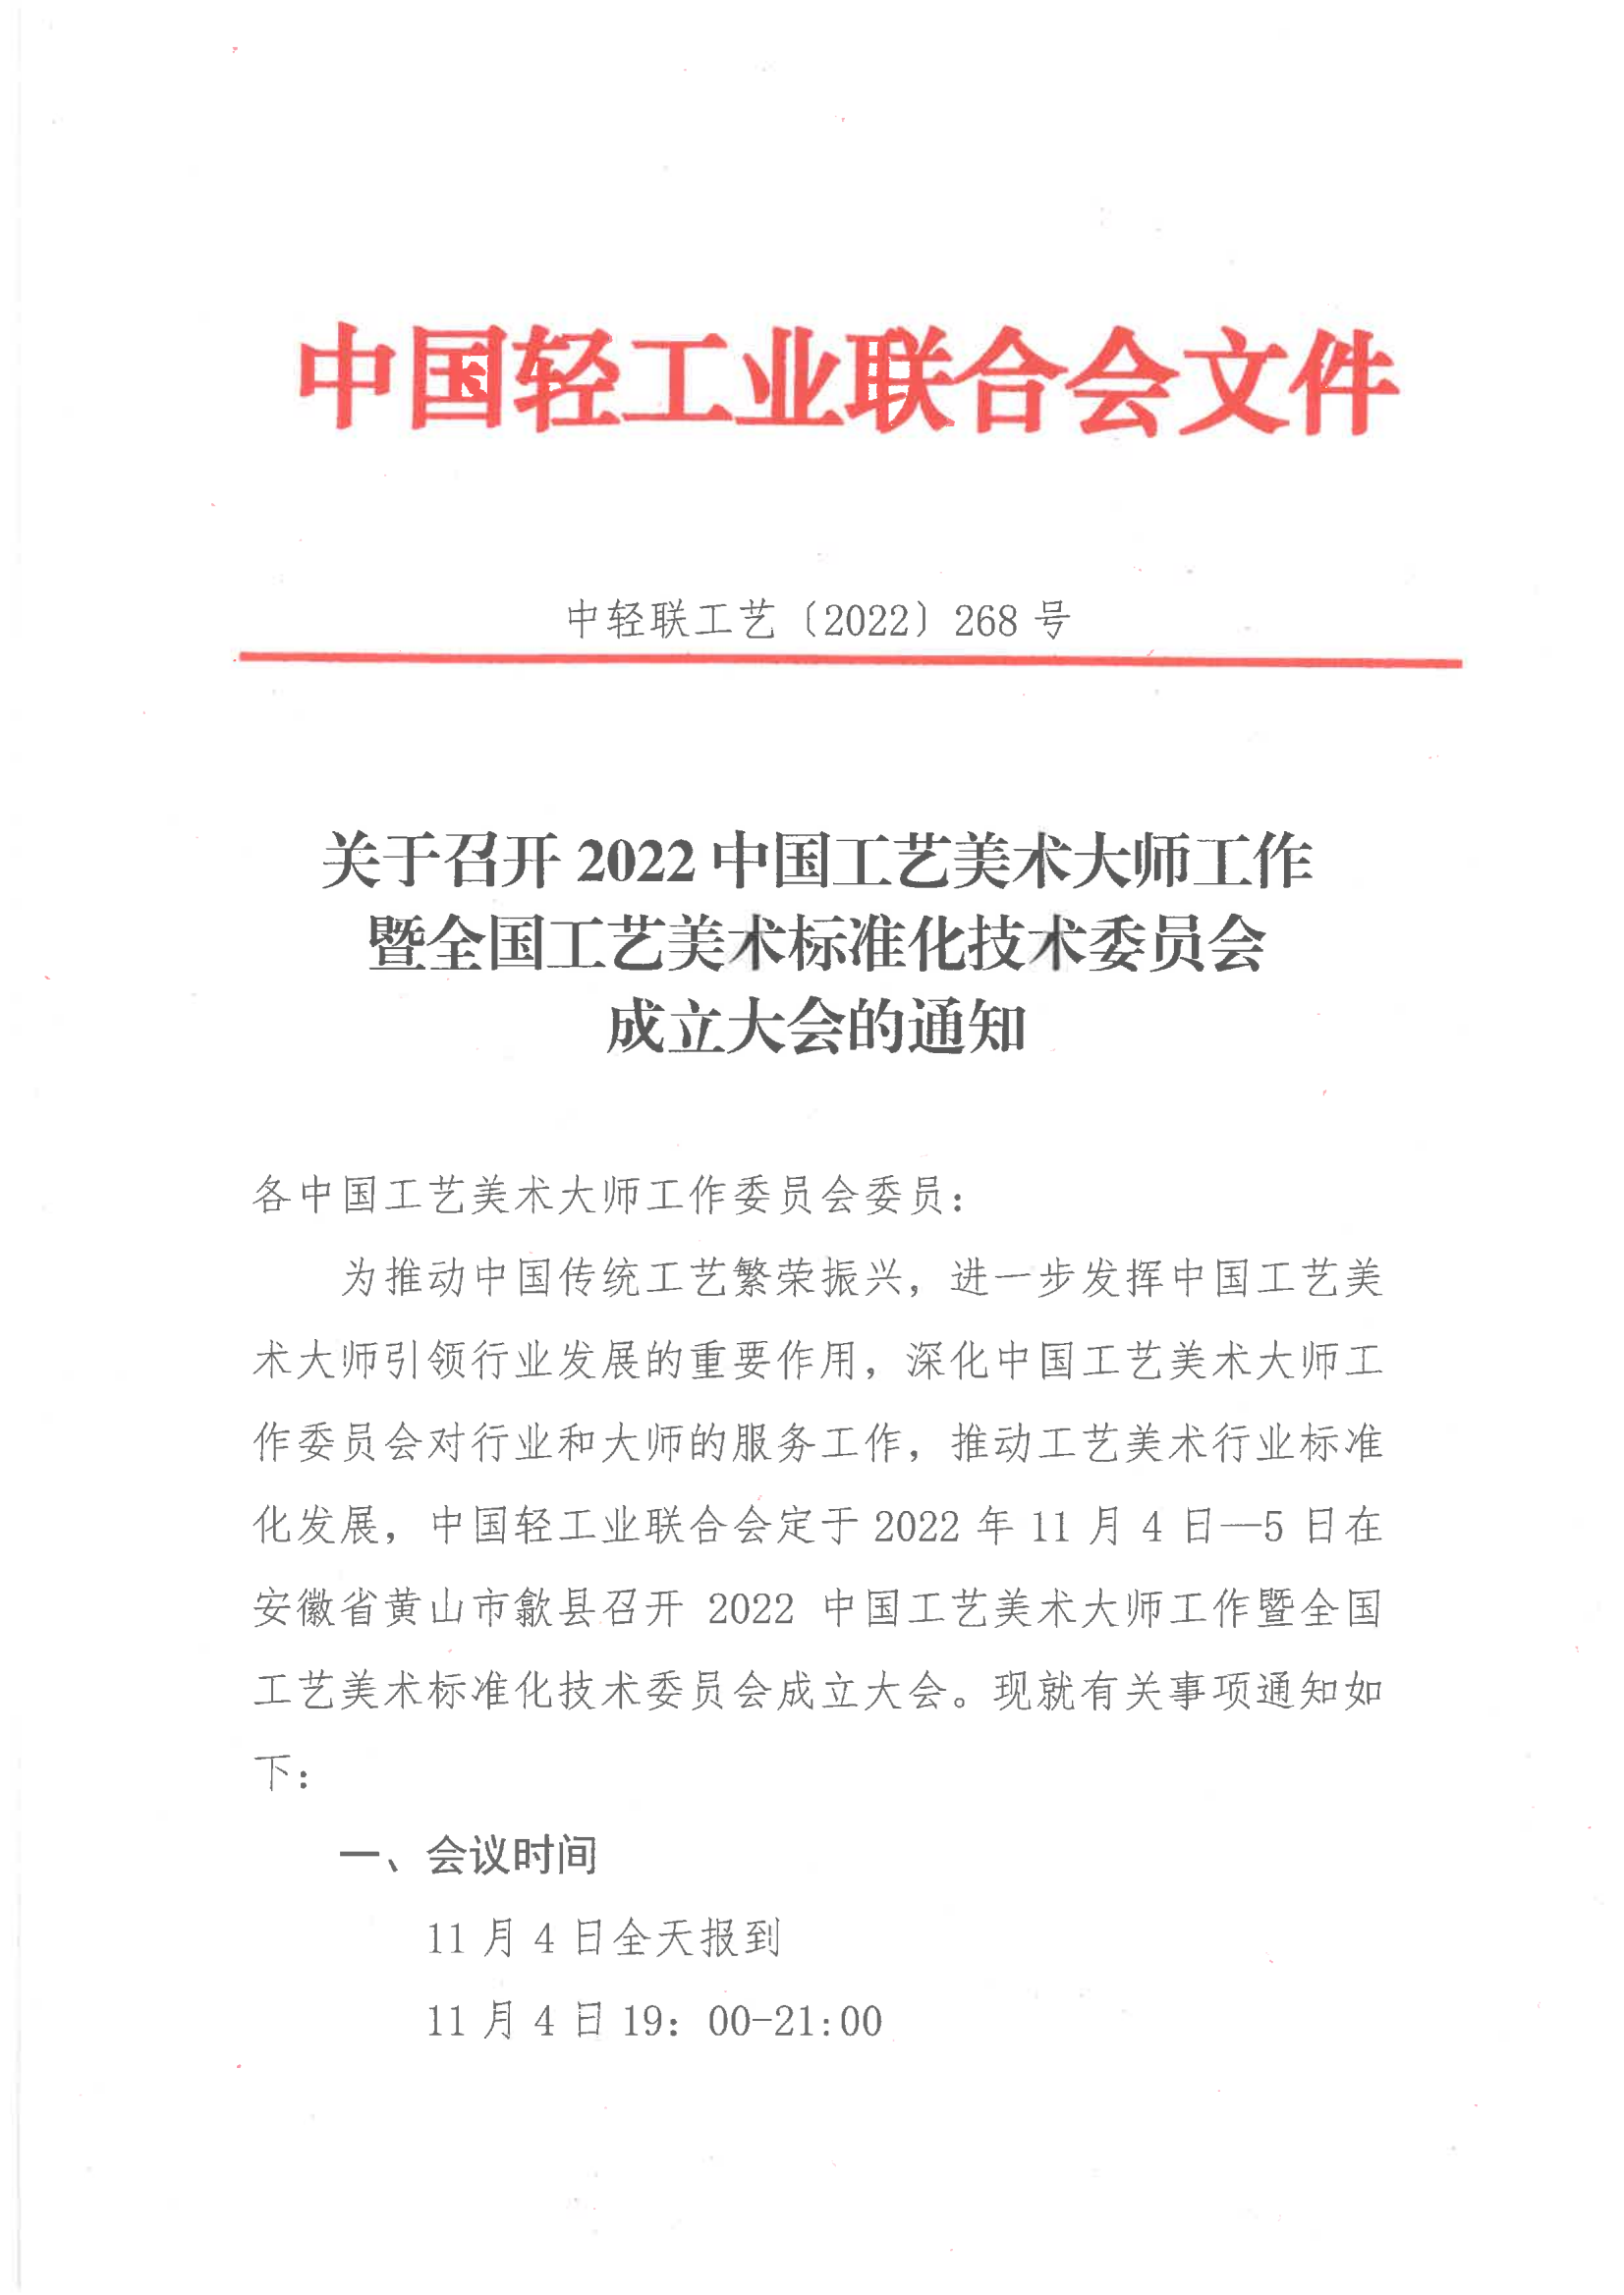 关于召开2022中国工艺美术大师工作暨全国工艺美术标准化技术委员会成立大会的通知（大师委委员）_00.png